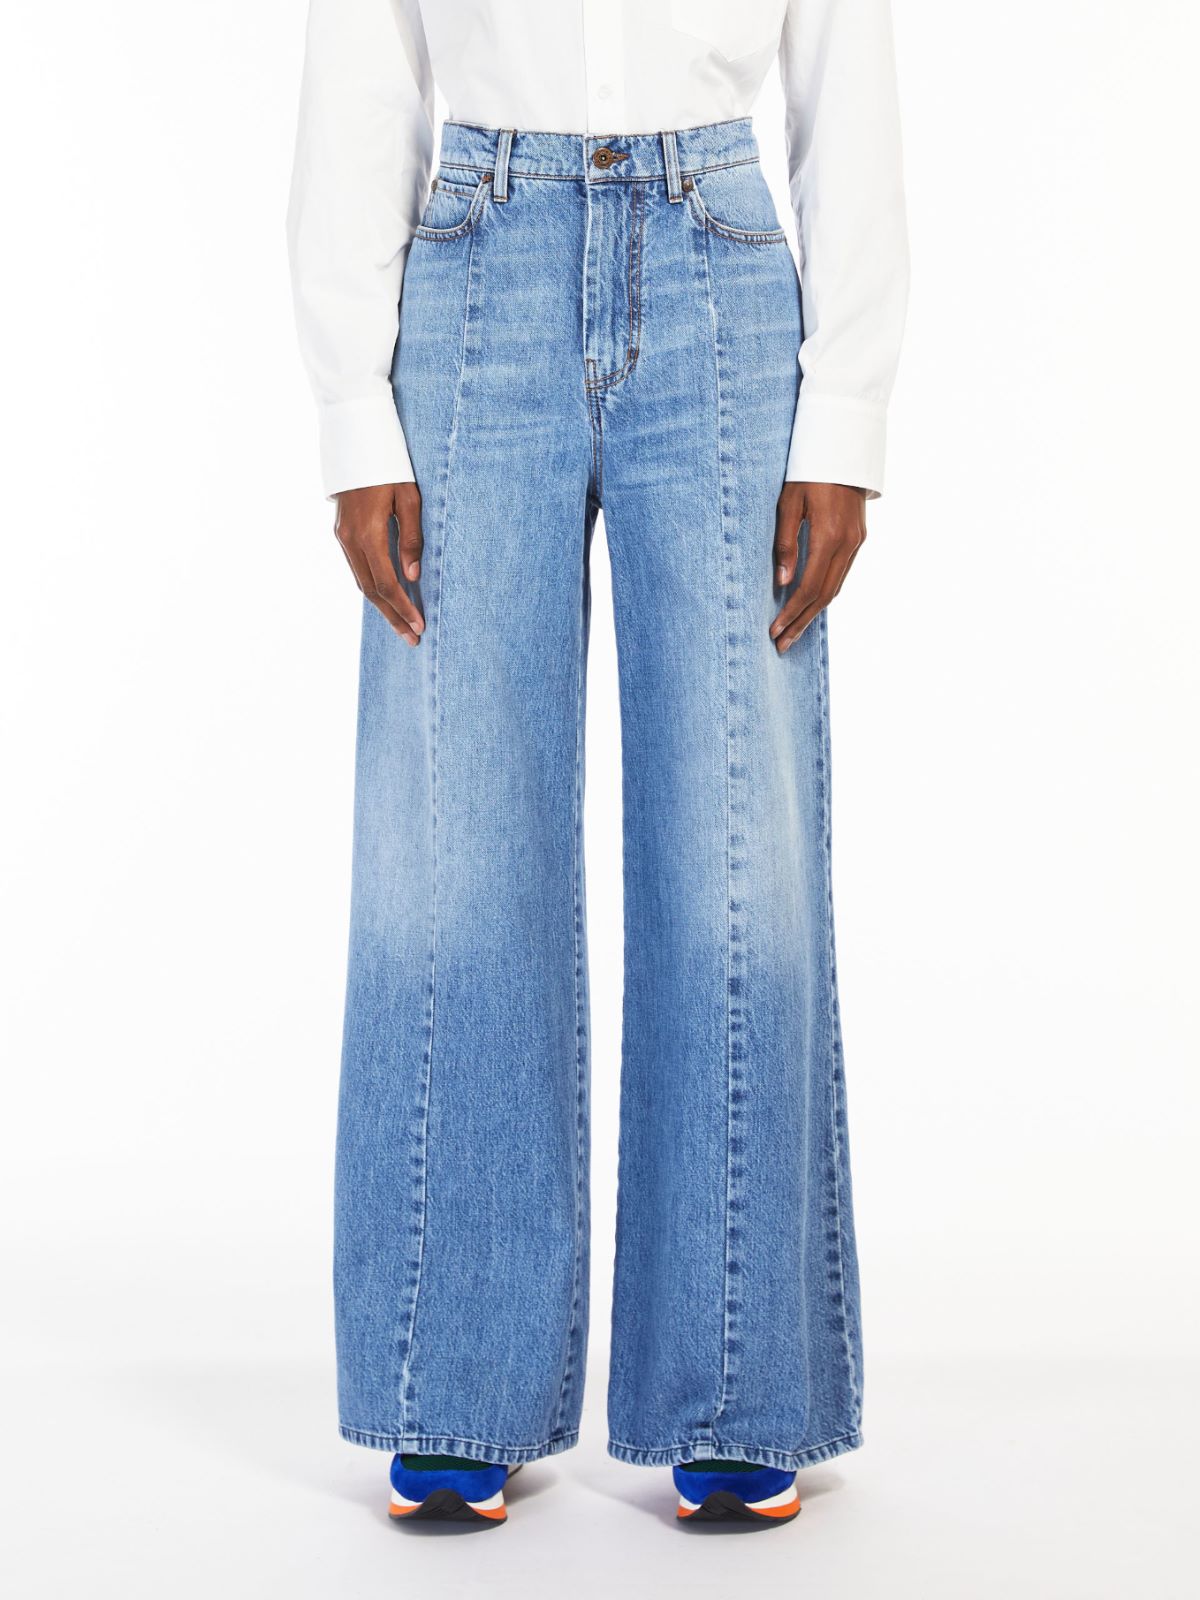 Cotton denim jeans - NAVY - Weekend Max Mara - 2